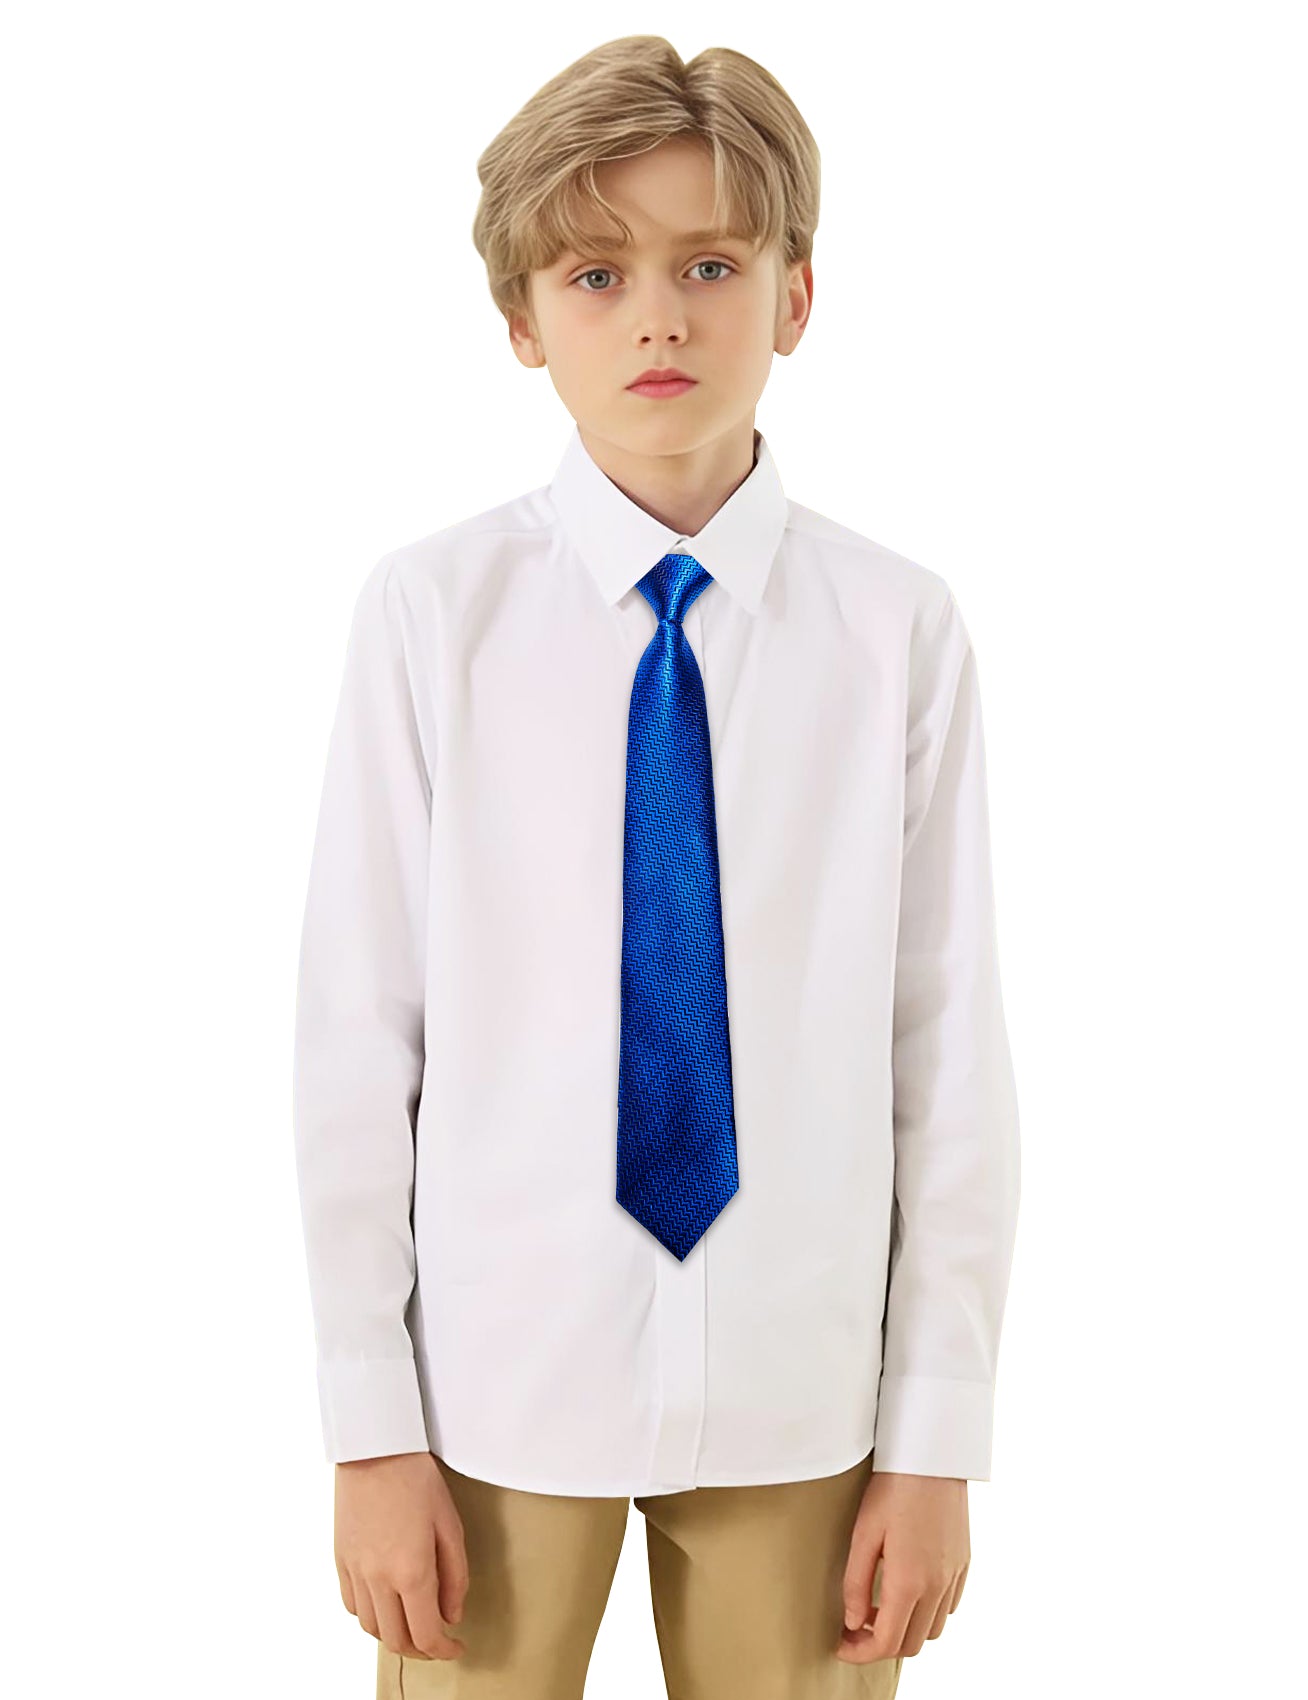 Barry.wang Kids Tie Cobalt Blue Geometry Children's Silk Tie Hanky Set